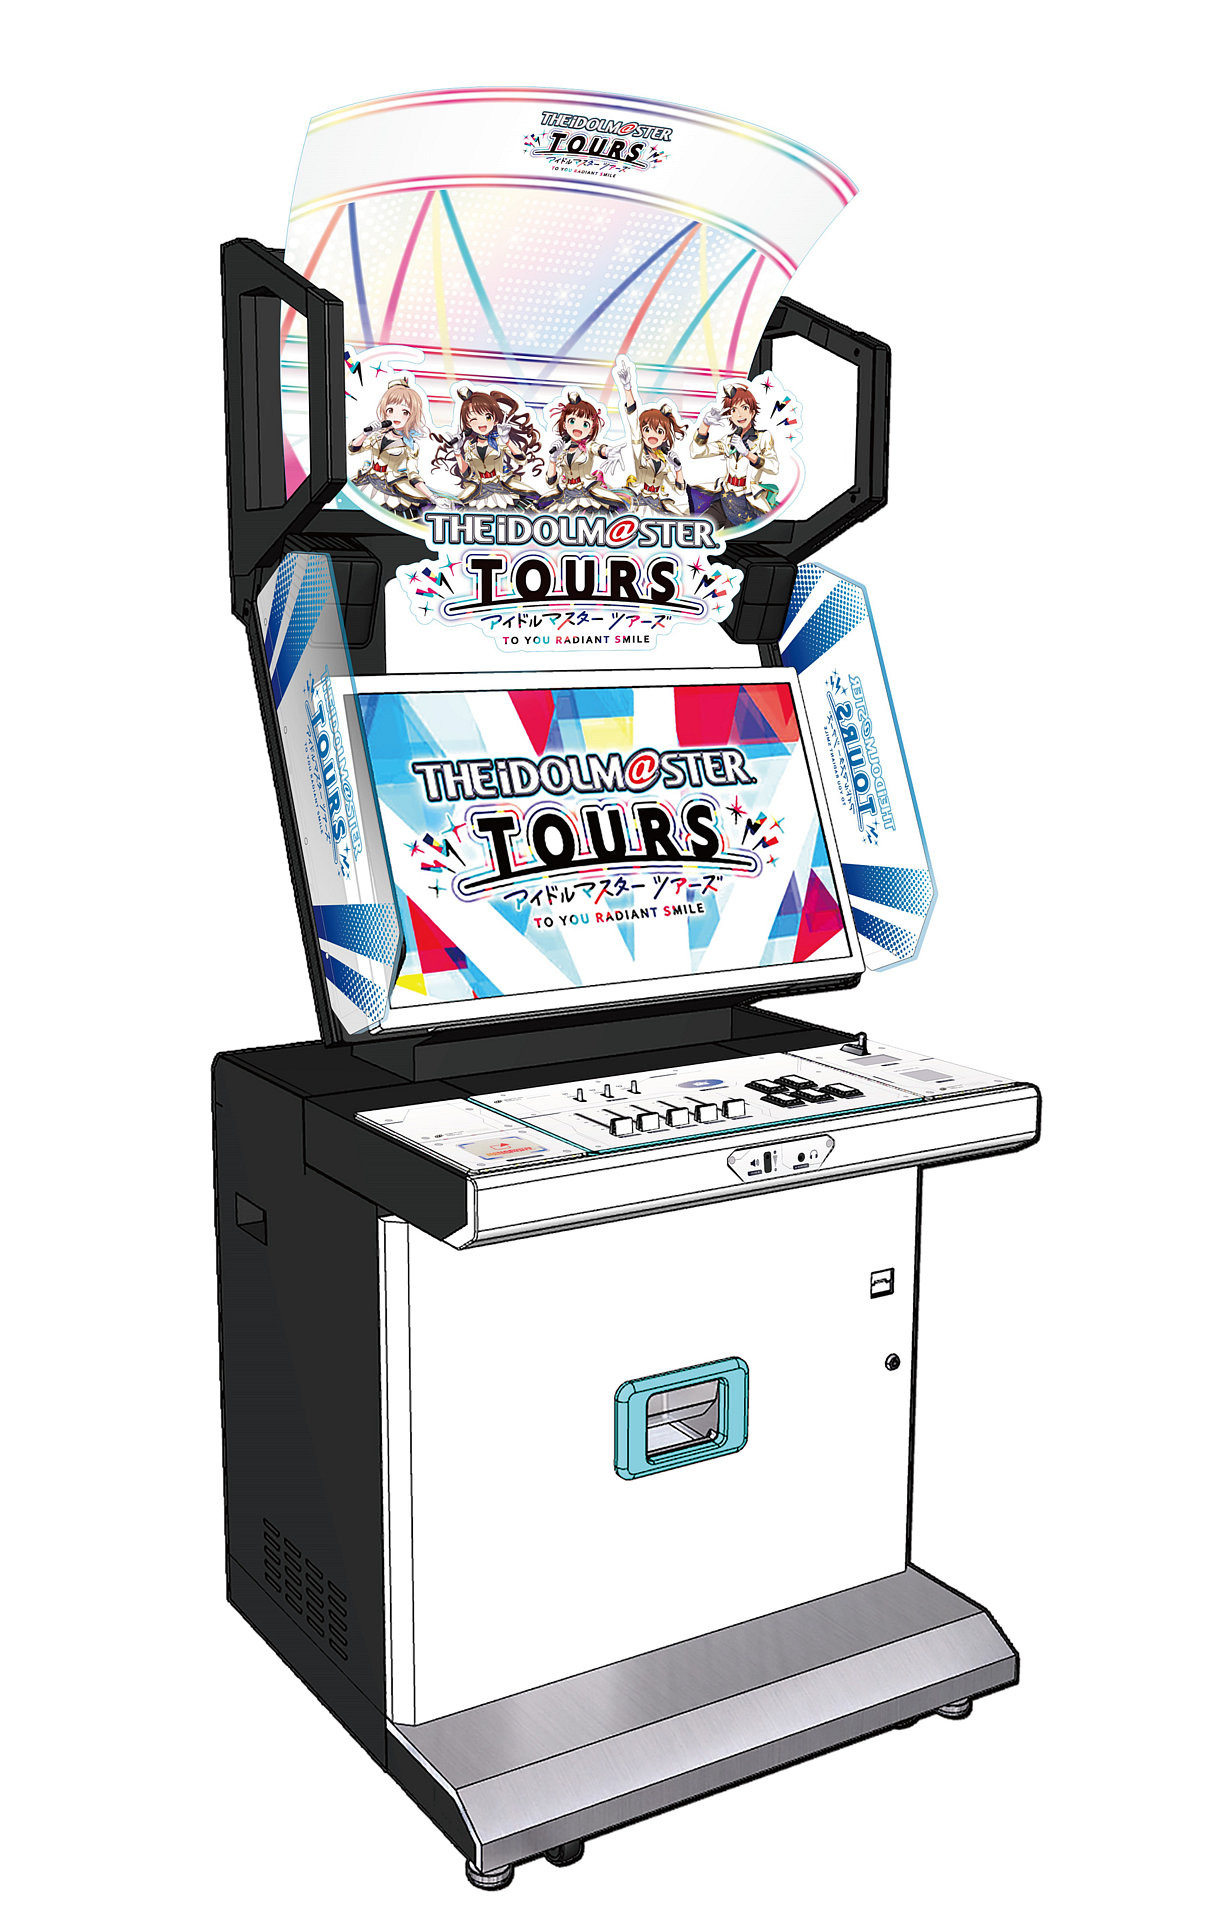 《偶像大师》系列大型电玩新作《TOURS》正式发表 机台搭载舞台演出专属输入介面插图